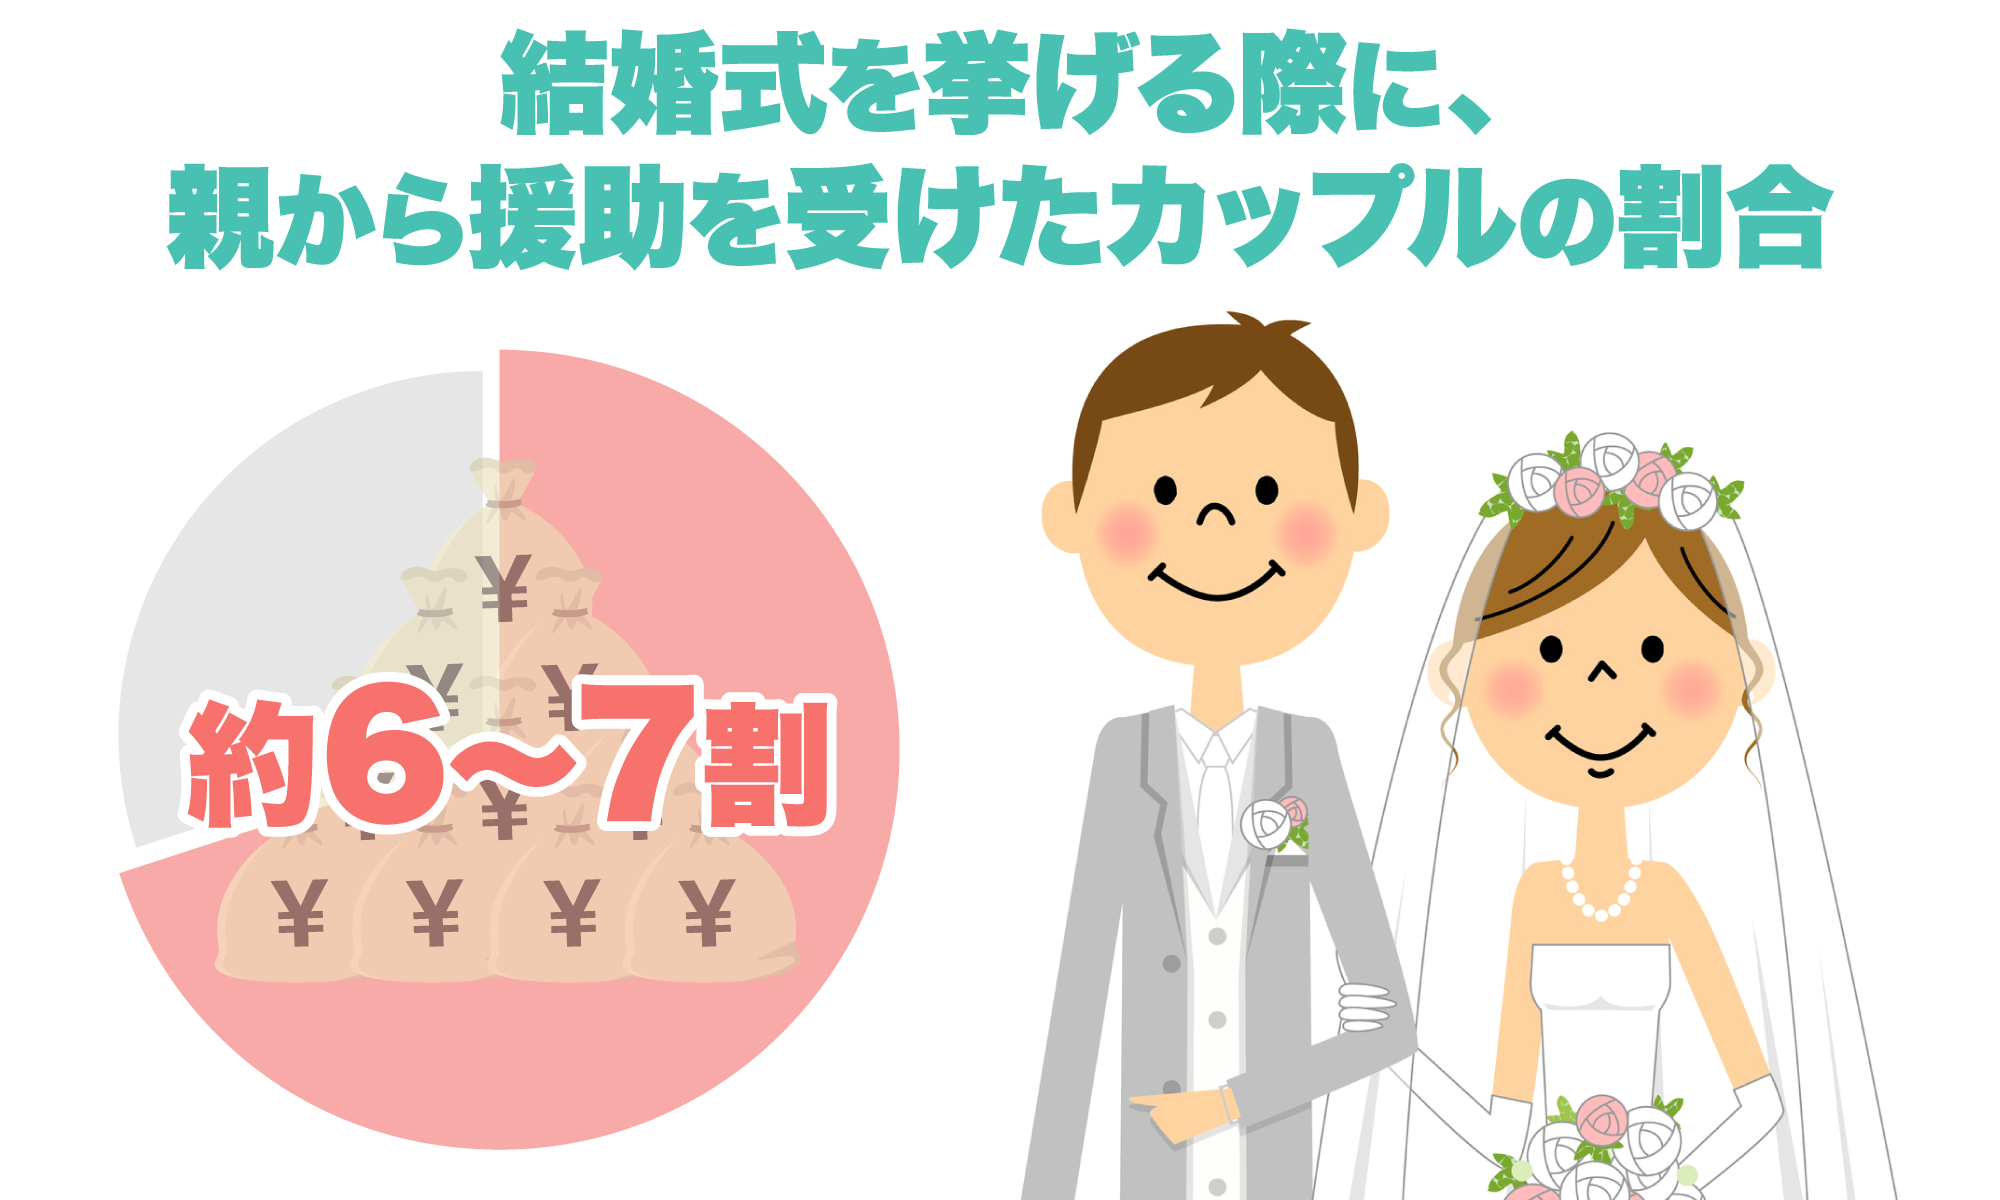 結婚式を挙げる際に、親から援助を受けたカップルの割合は約6割～7割